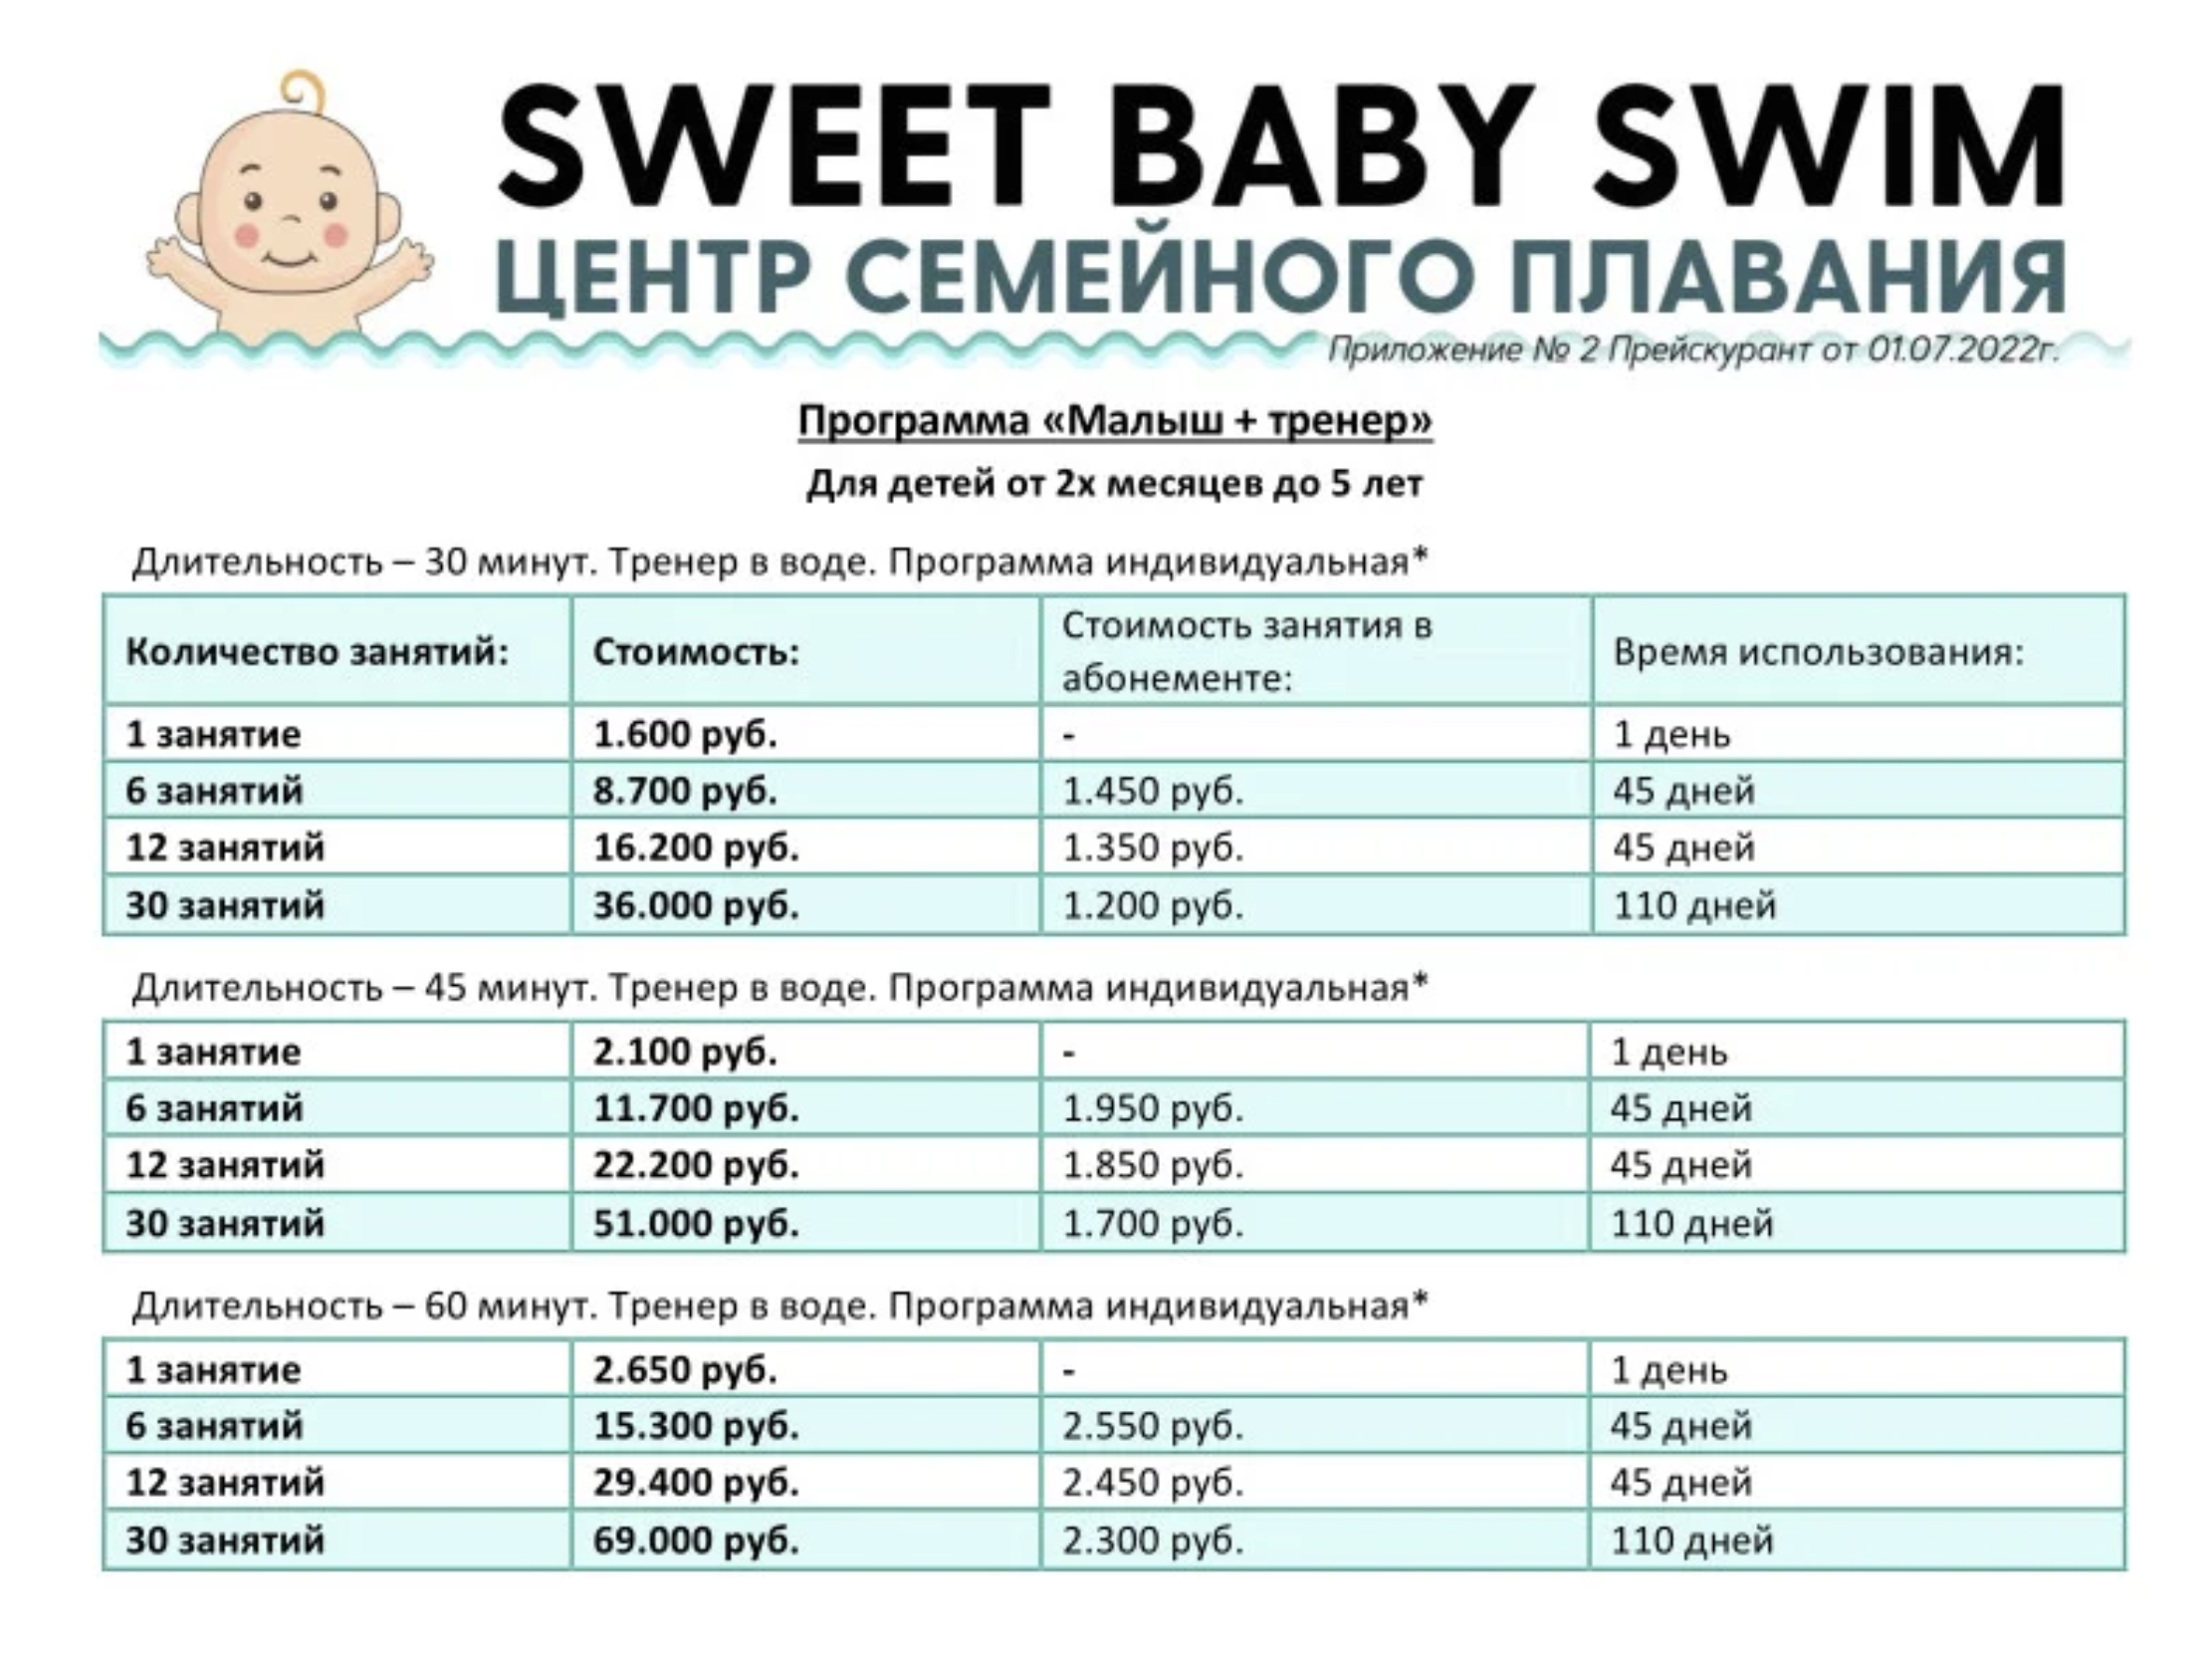 Прайс индивидуальных занятий по плаванию в центре семейного плавания Sweet Baby Swim. Источник: sbs.su